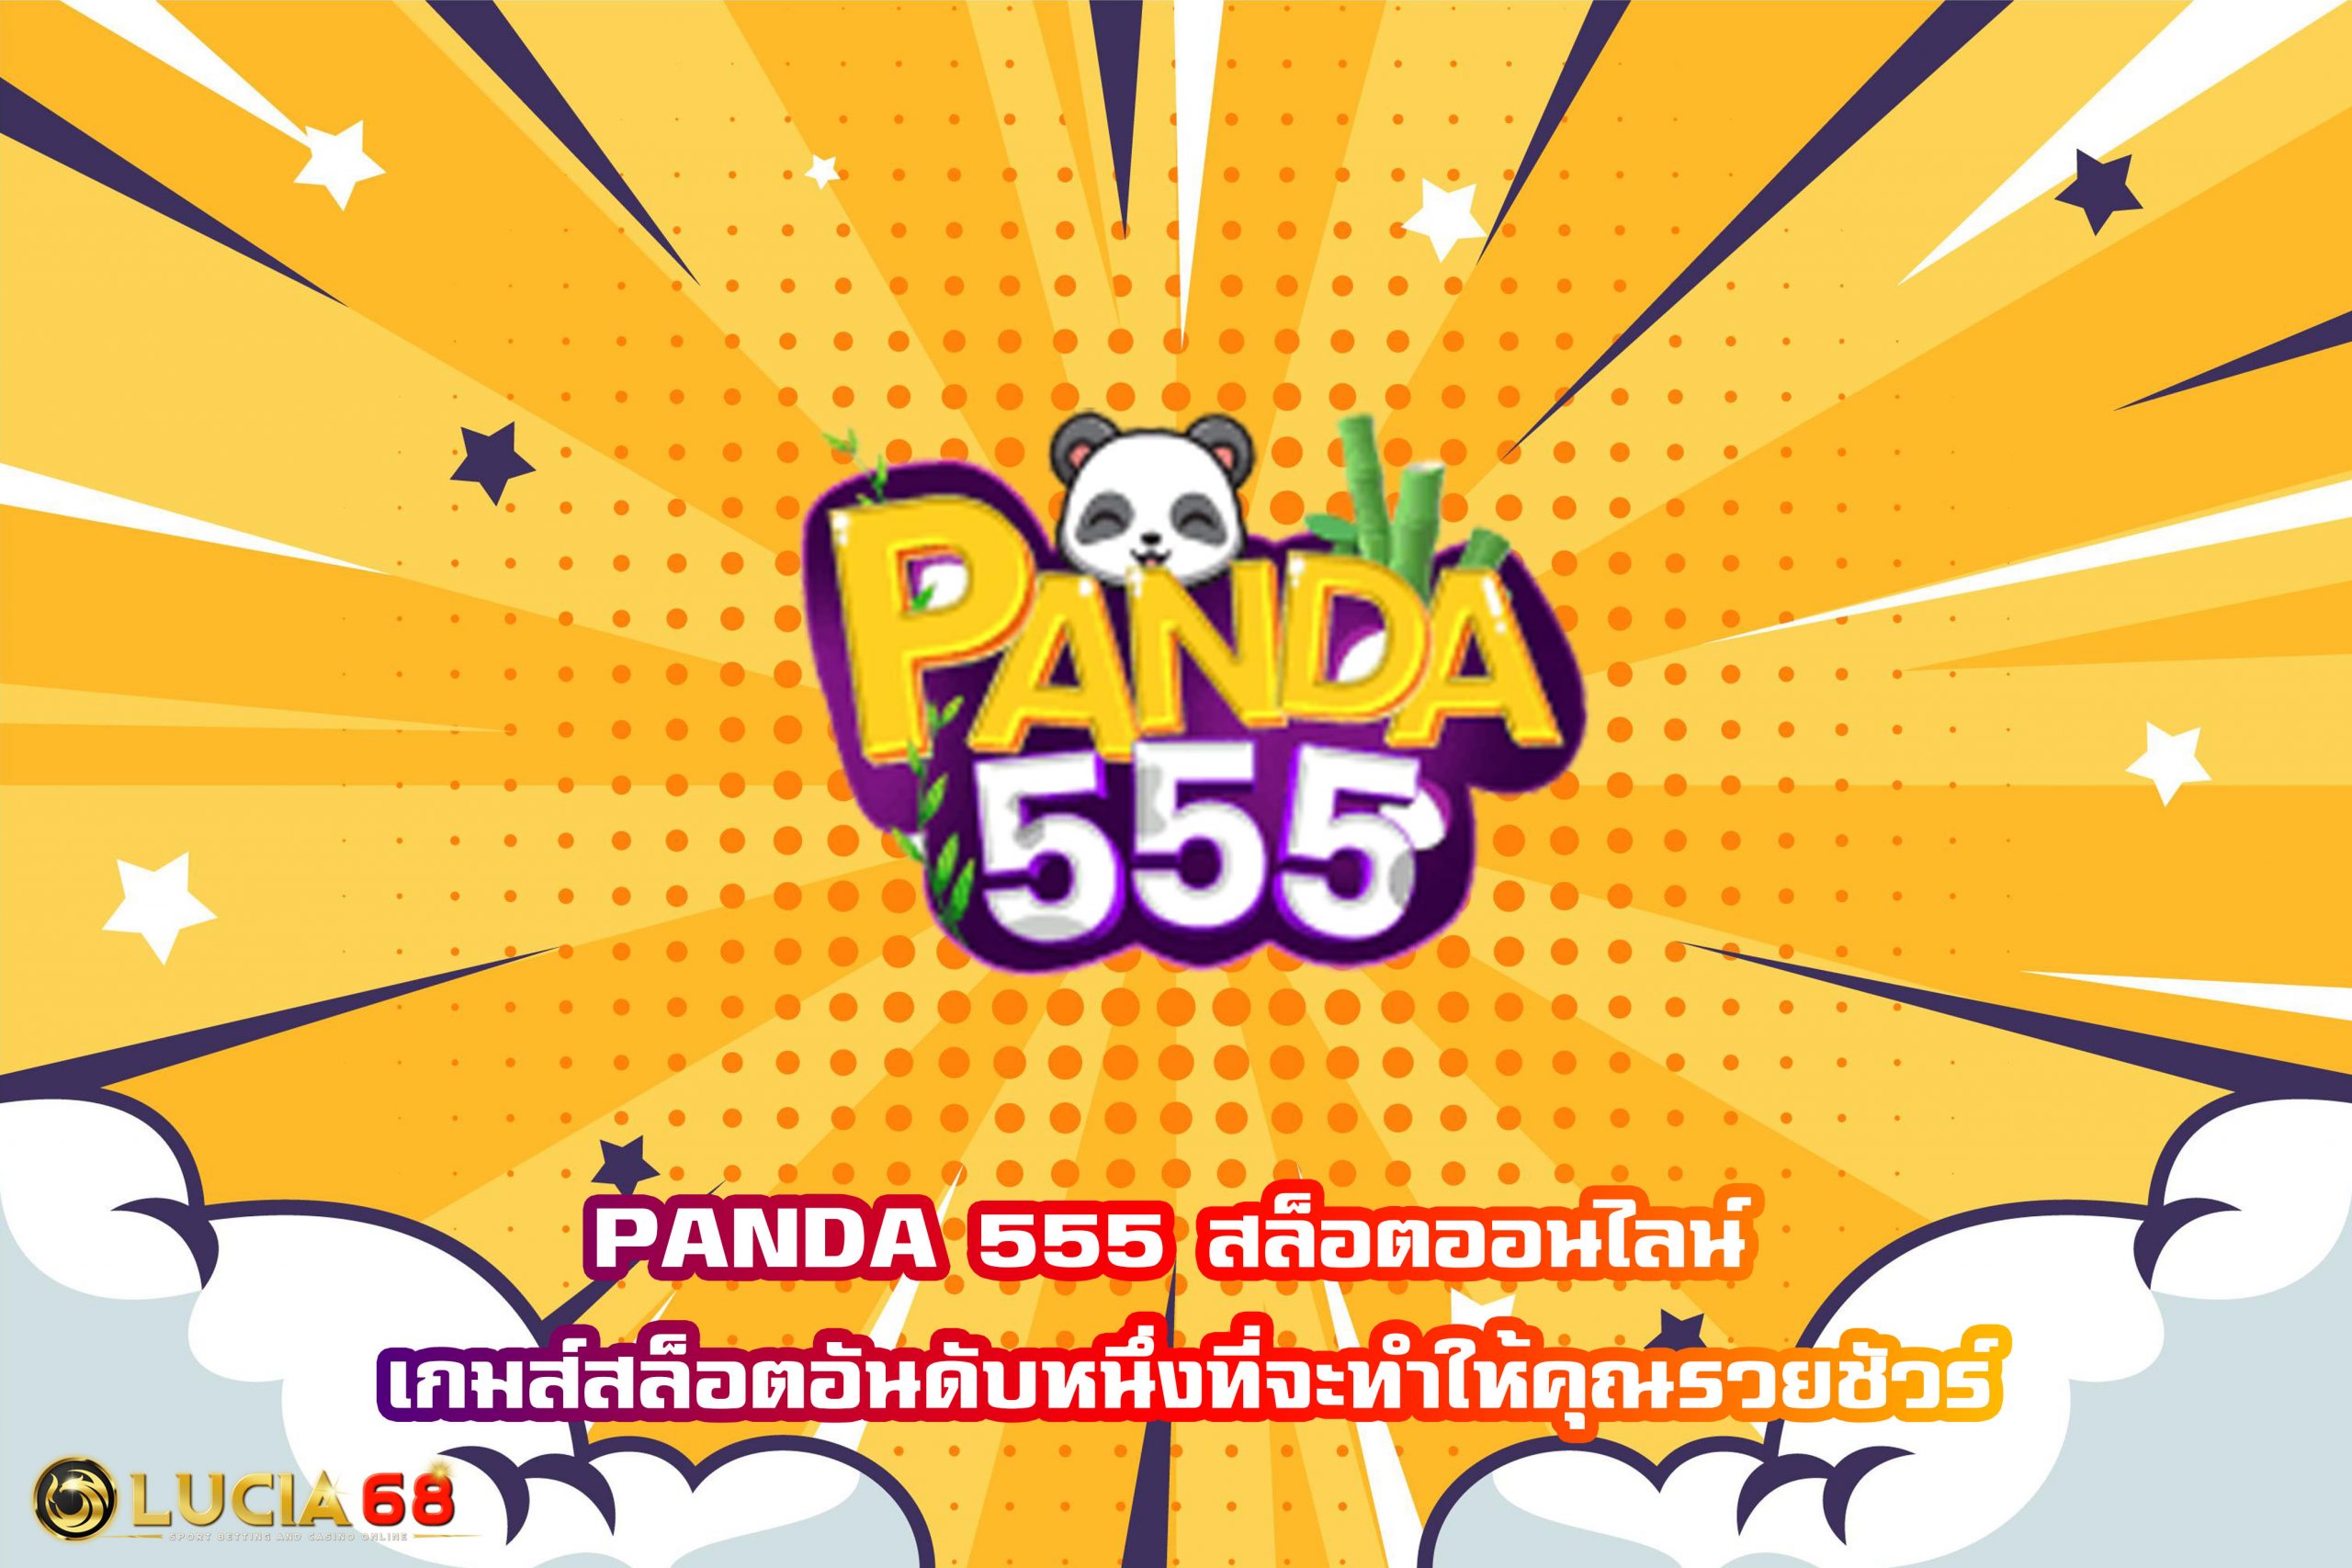 PANDA 555 สล็อตออนไลน์ เกมส์สล็อตอันดับหนึ่งที่จะทำให้คุณรวยชัวร์